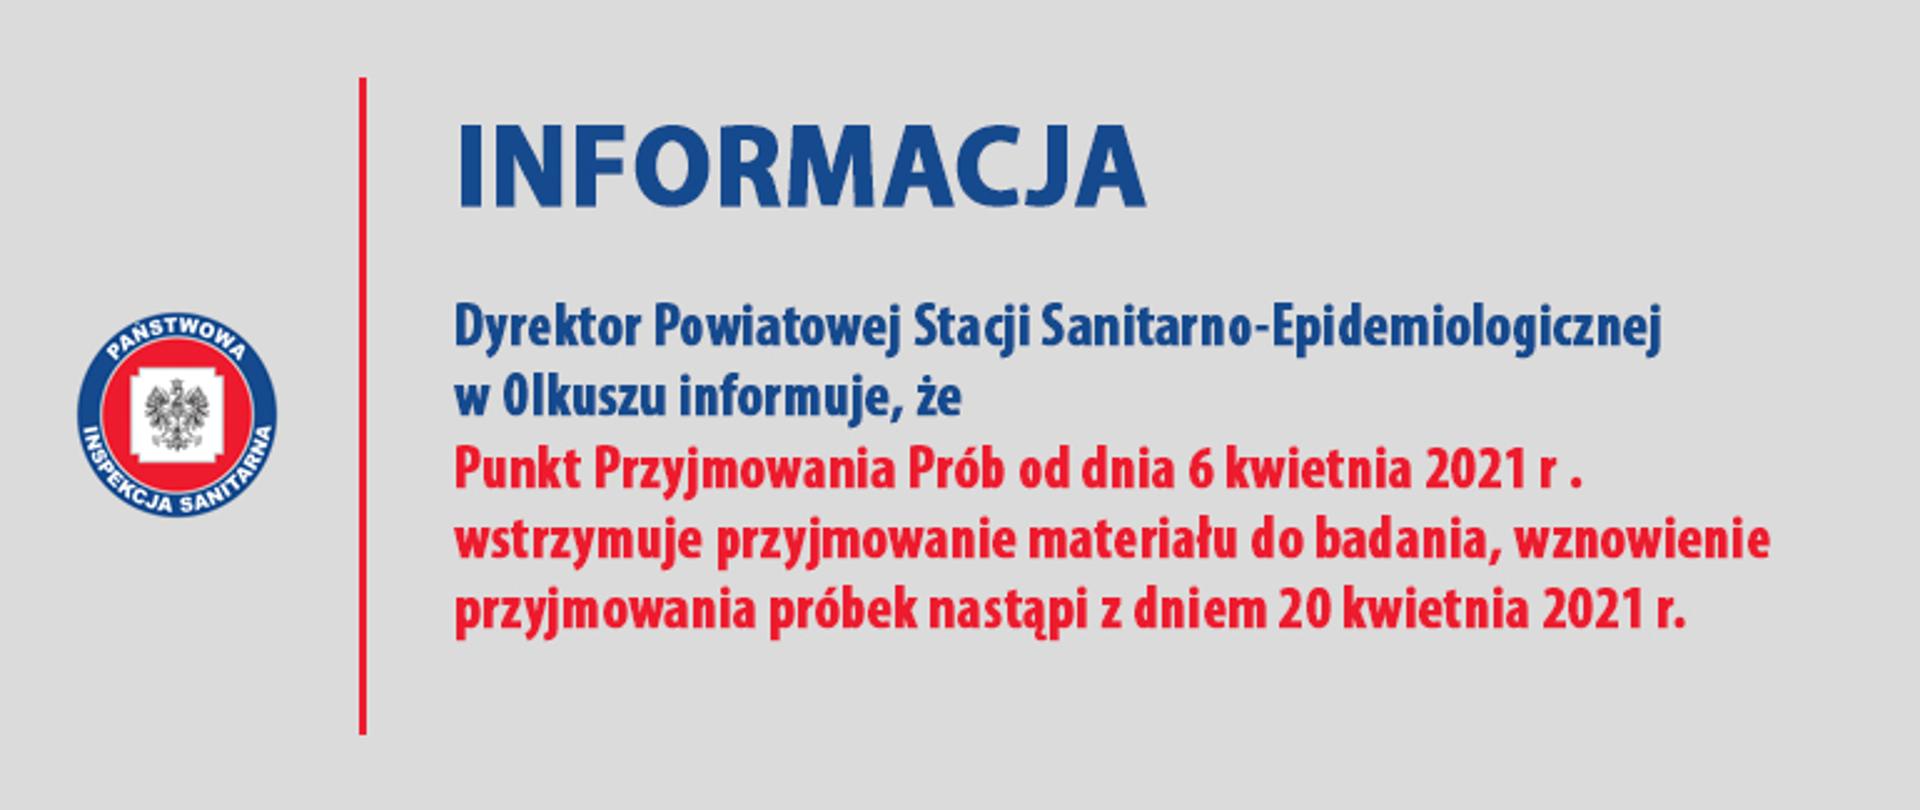 INFORMACJA Dyrektor Powiatowej Stacji Sanitarno-Epidemiologicznej w Olkuszu informuje, że Punkt Przyjmowania Prób od dnia 6 kwietnia 2021 r . wstrzymuje przyjmowanie materiału do badania, wznowienie przyjmowania próbek nastąpi z dniem 20 kwietnia 2021 r.
